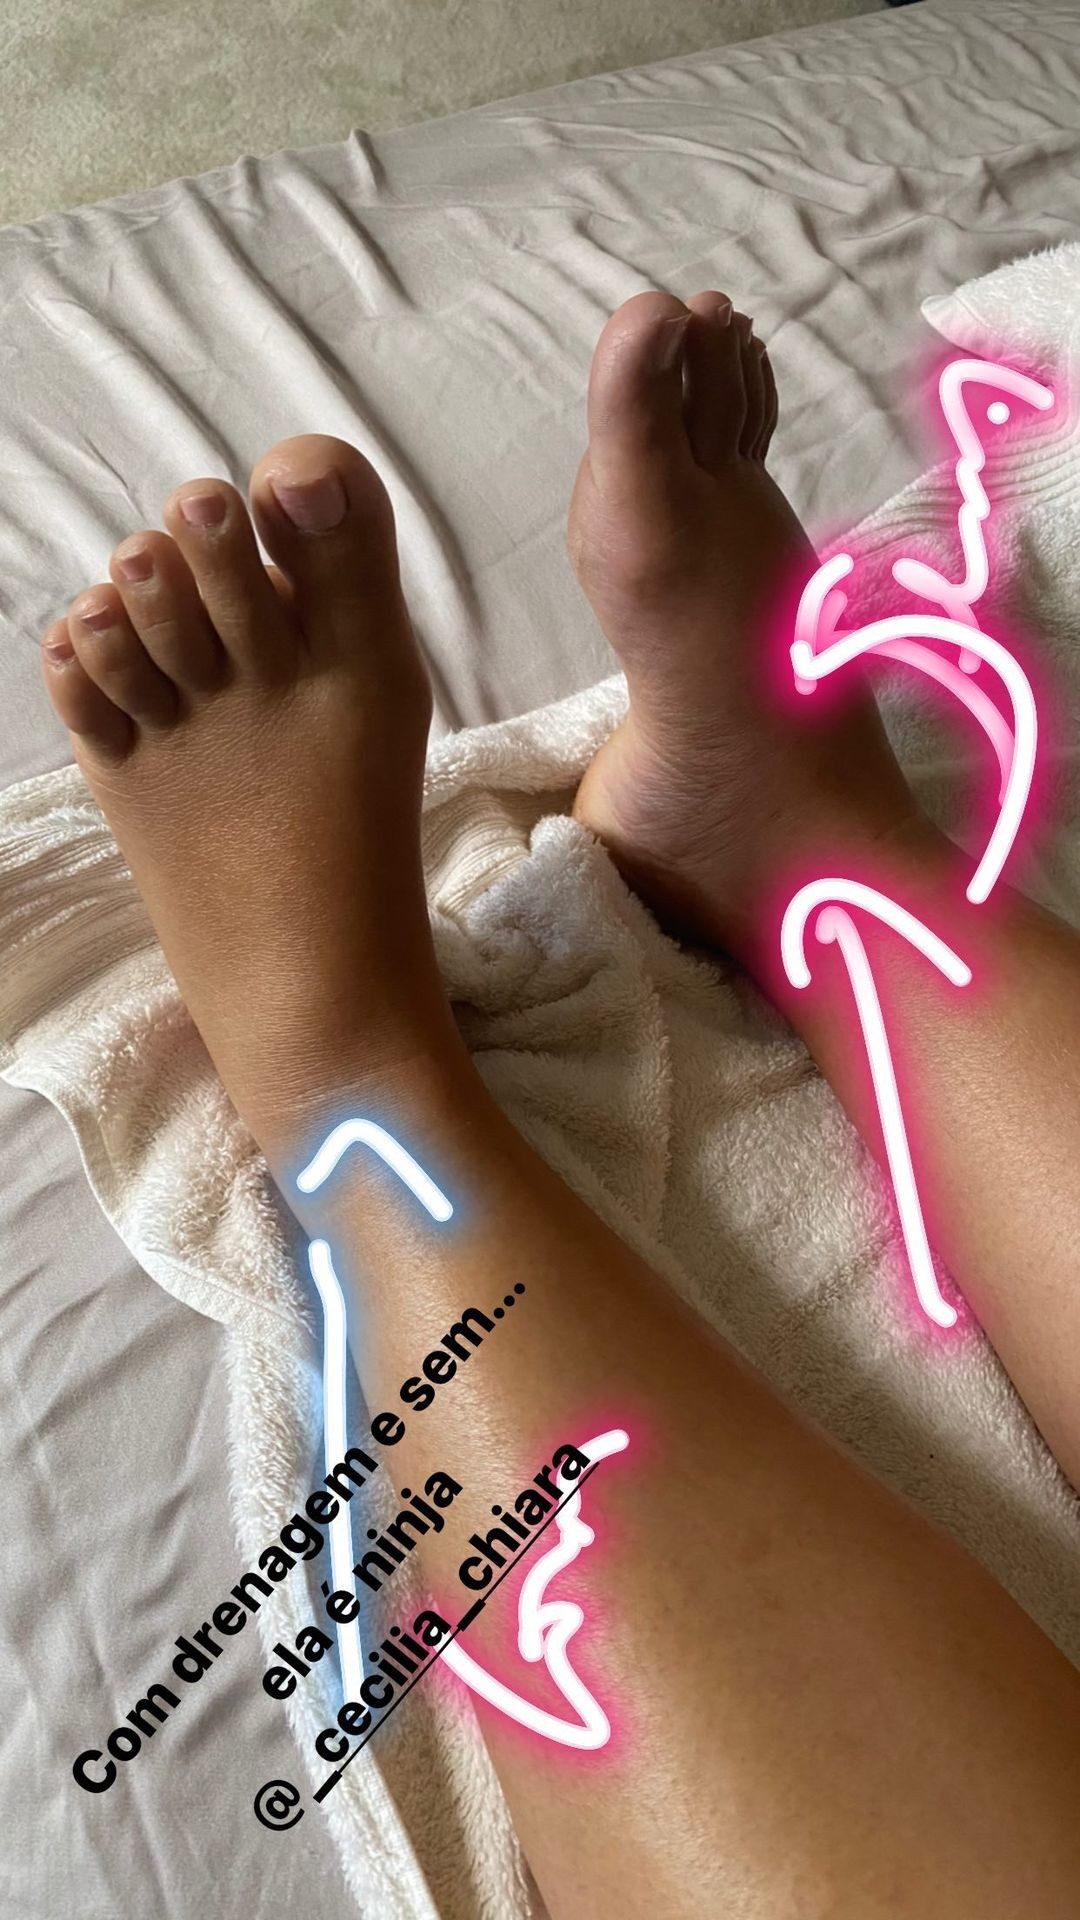 Simone mostra diferença nos pés depois (esquerdo) e antes (direito) de drenagem (Foto: Reprodução/Instagram)